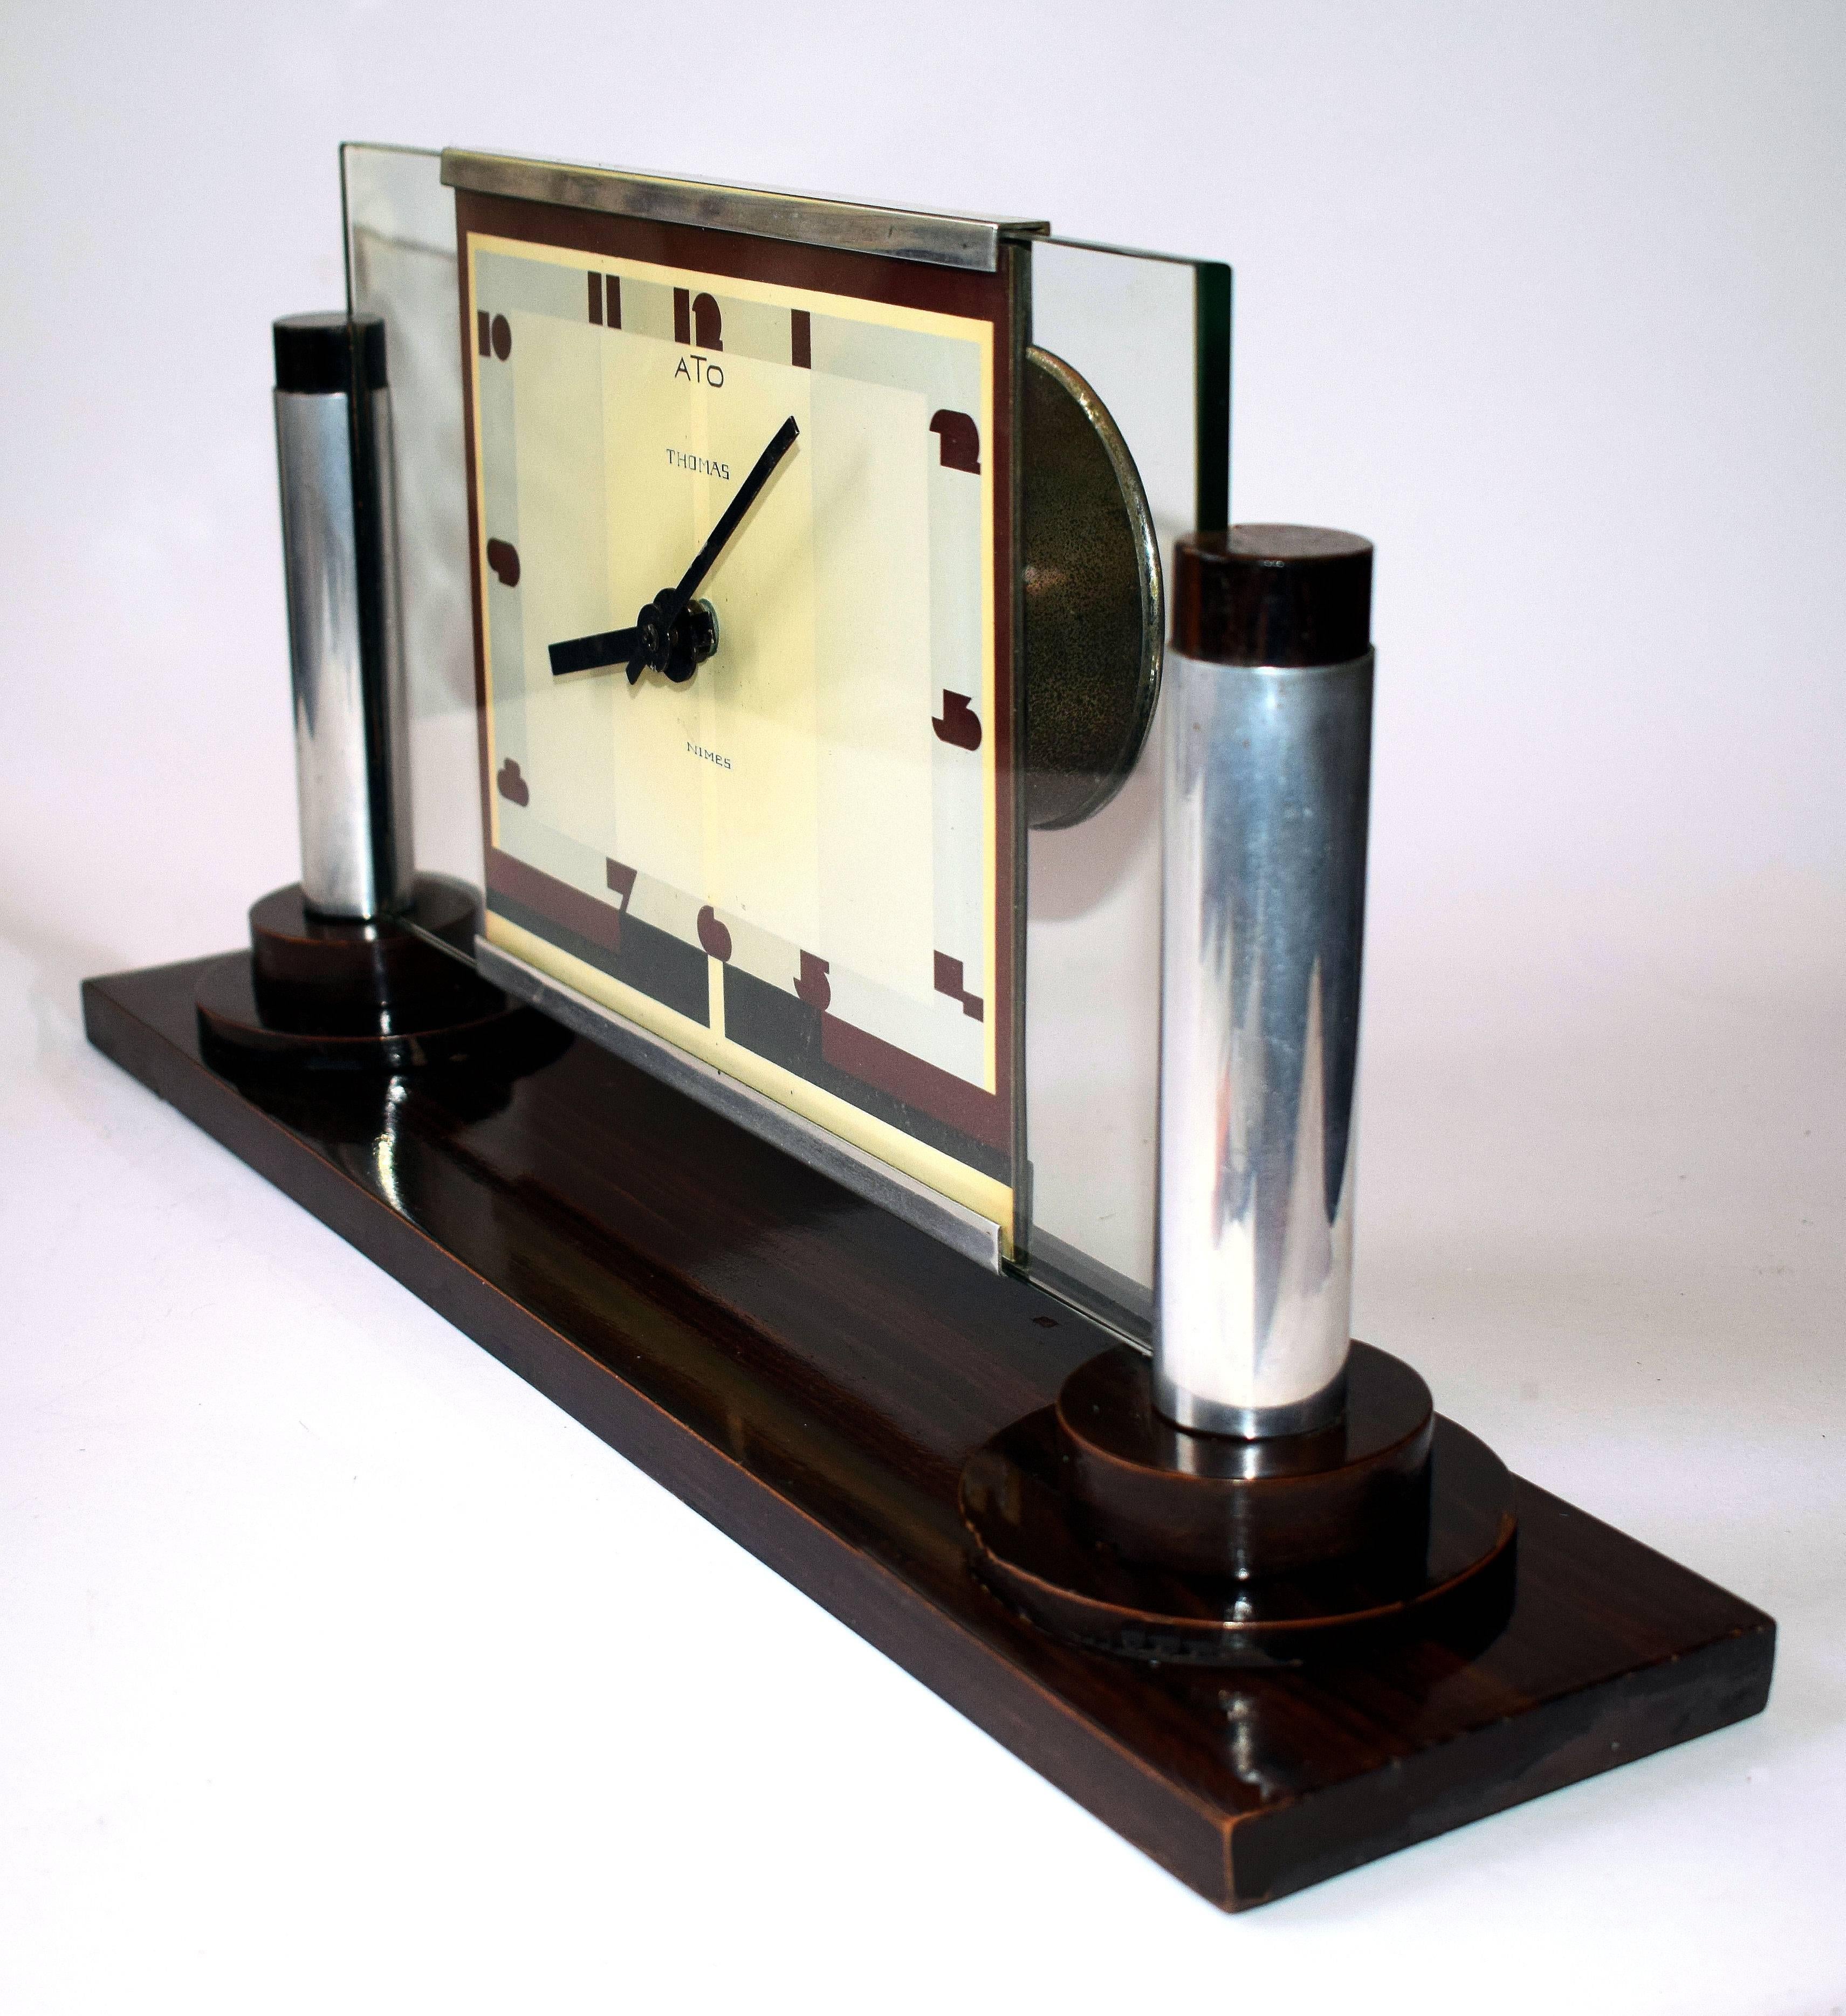 French Impressive Modernist Art Deco Clock by Ato, circa 1929